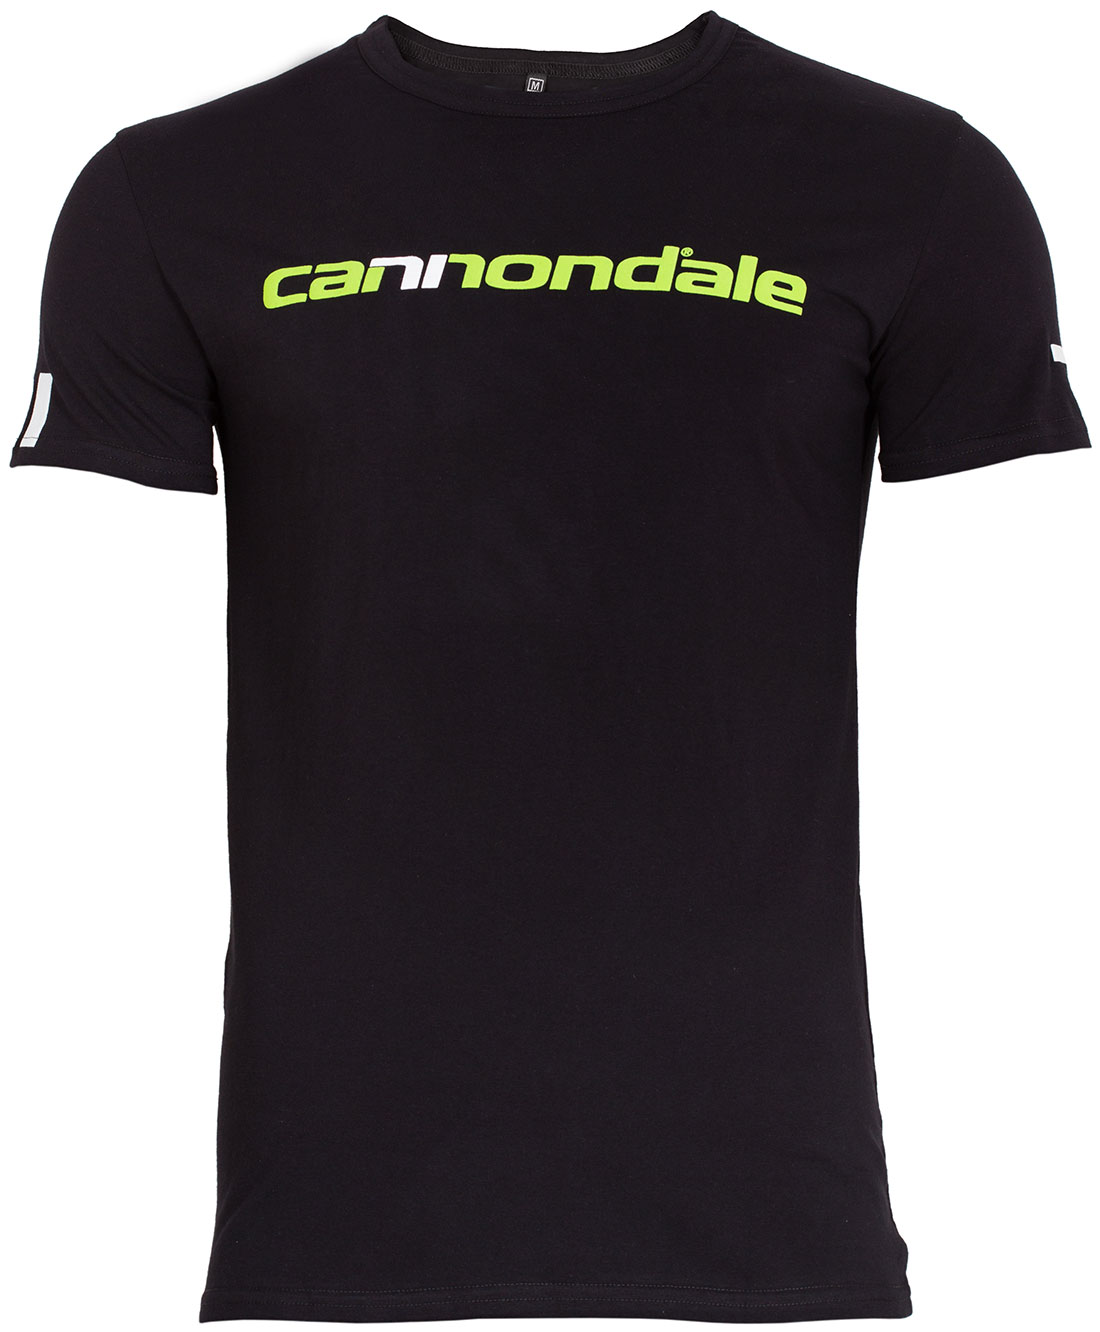 Футболка Cannondale с горизонтальным двухцветным логотипом, черная, размер S фото 